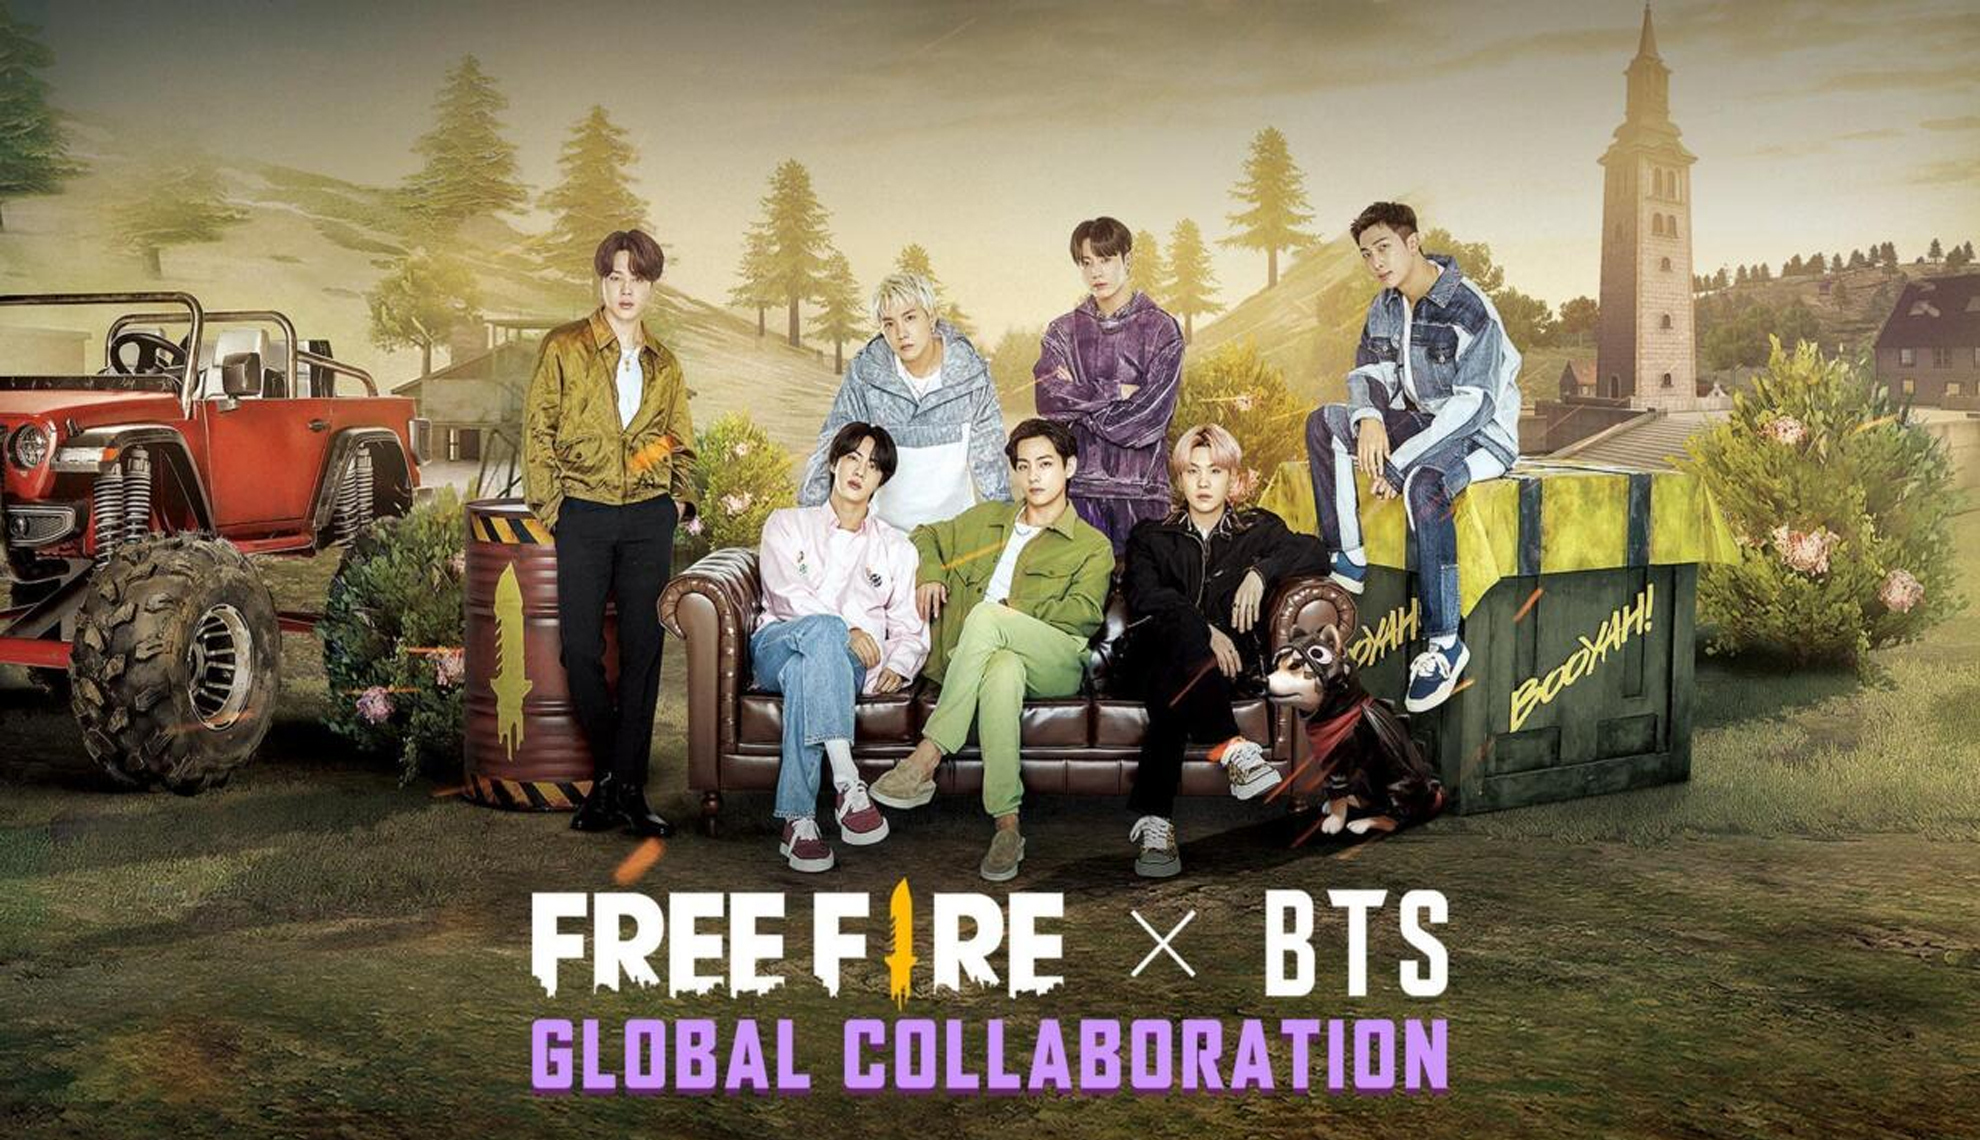 Colaboracion de BTS con Free Fire